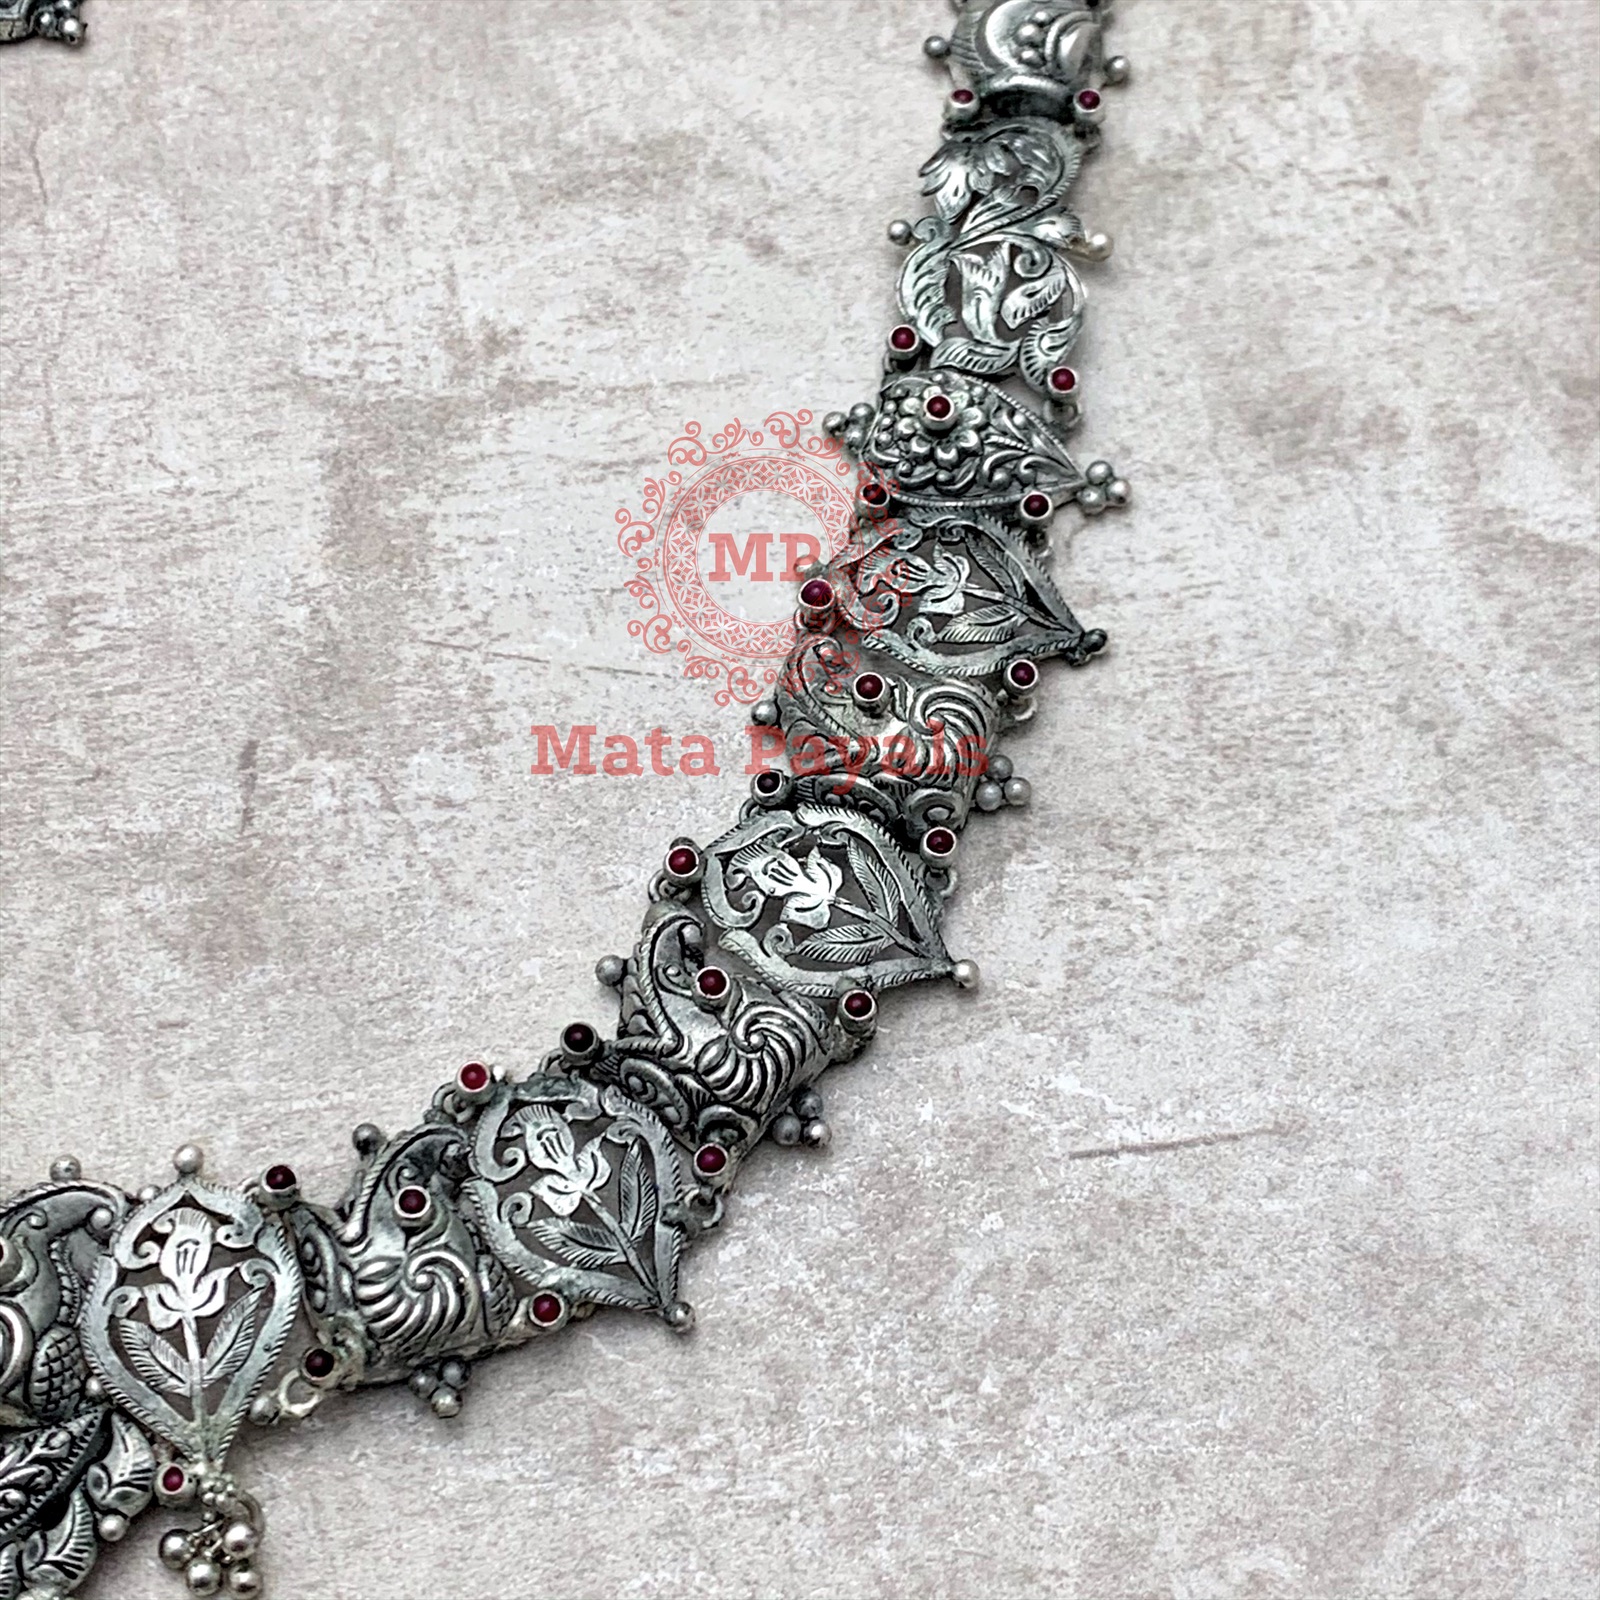 Divine Maha Lakshmi Phenomenal Necklace